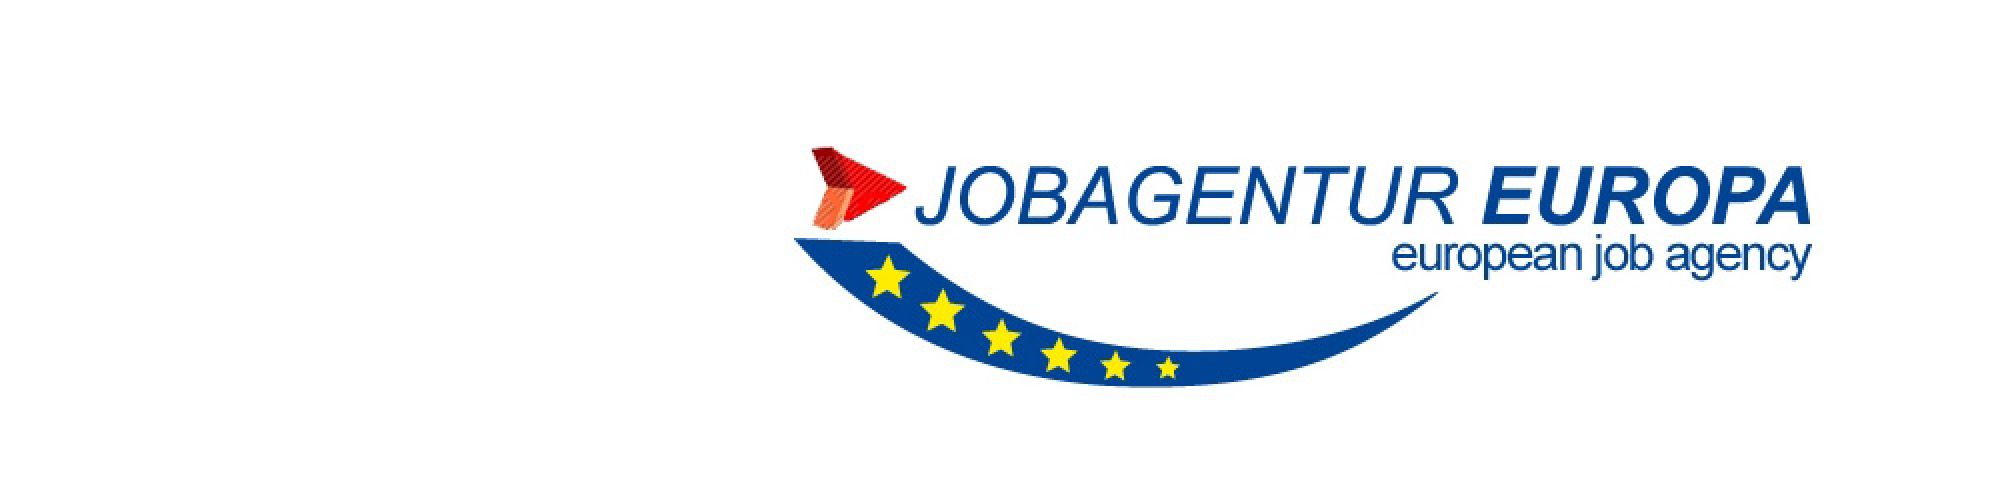 Aktion Personal // Jobagentur Europa